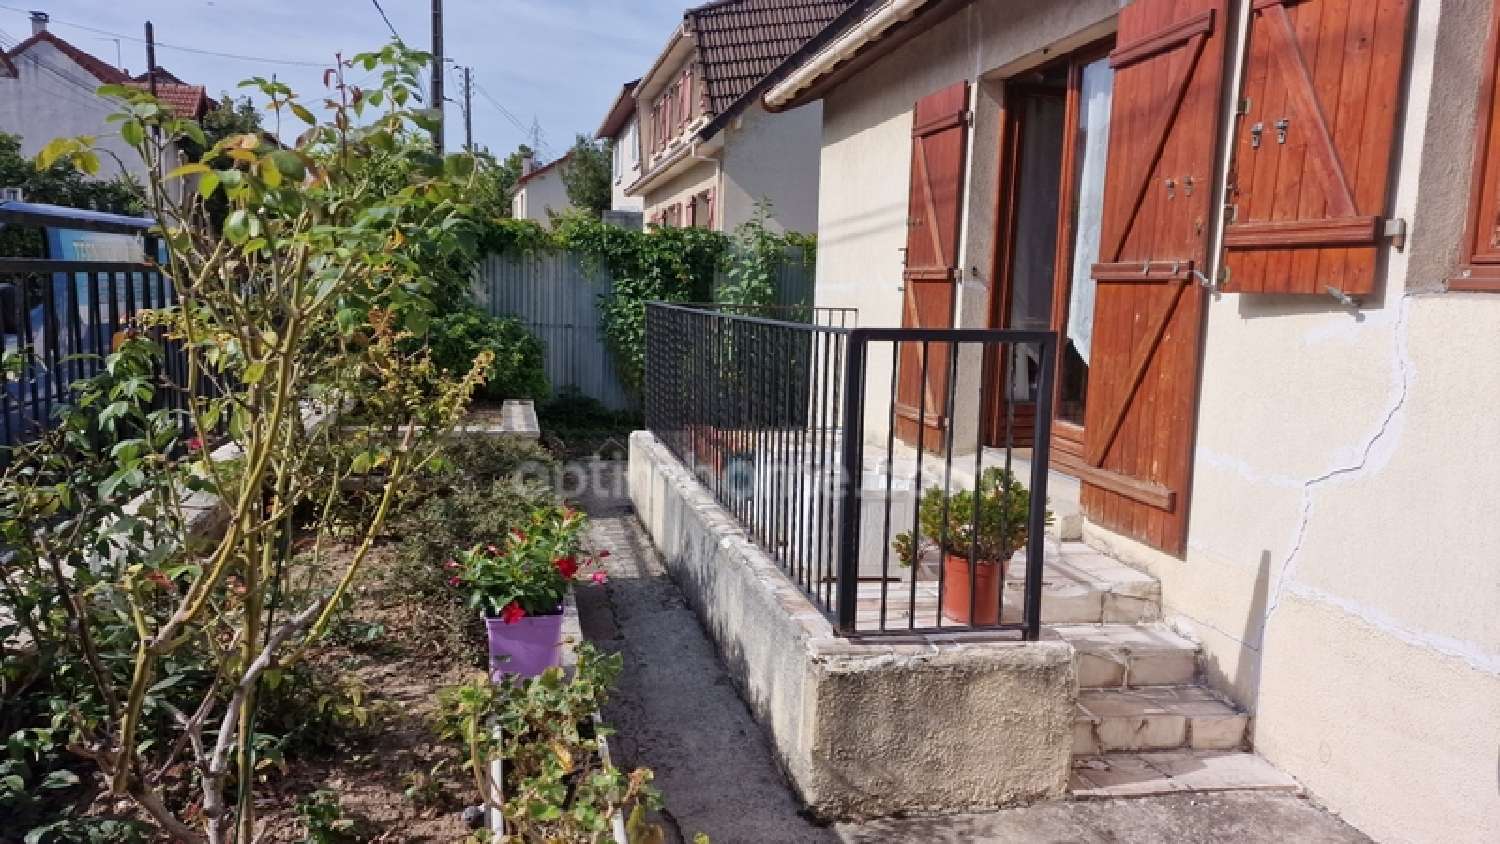  à vendre maison Pierrefitte-sur-Seine Seine-Saint-Denis 2